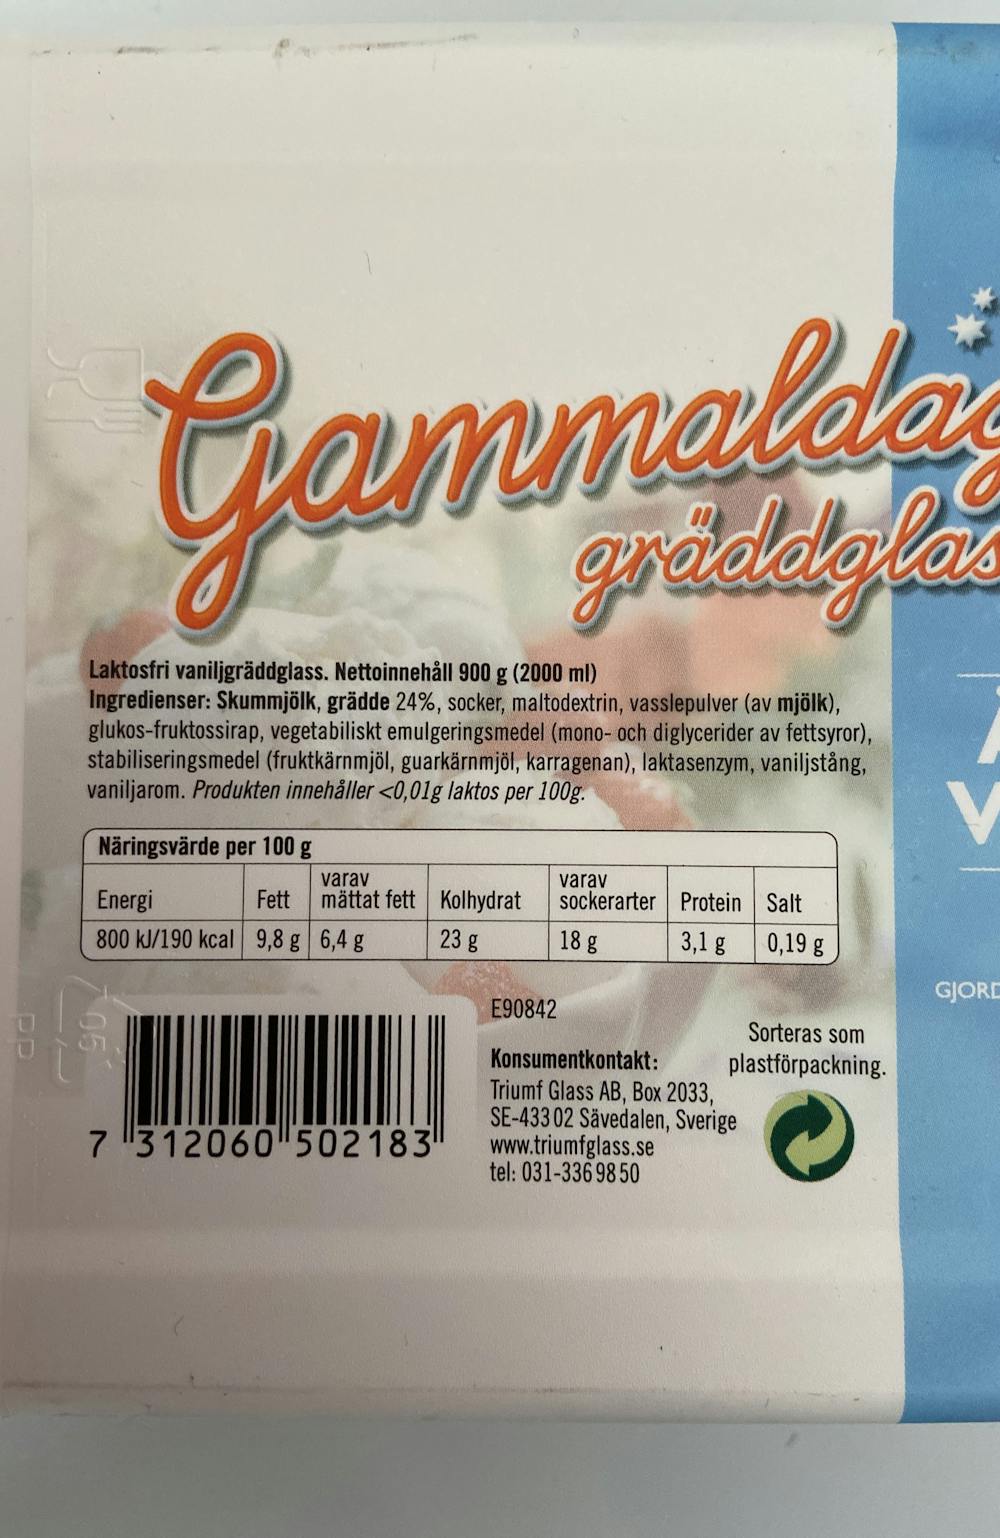 Ingrediensliste - Gammaldags gräddglass laktosfri äkta vanilj, Triumf Glass